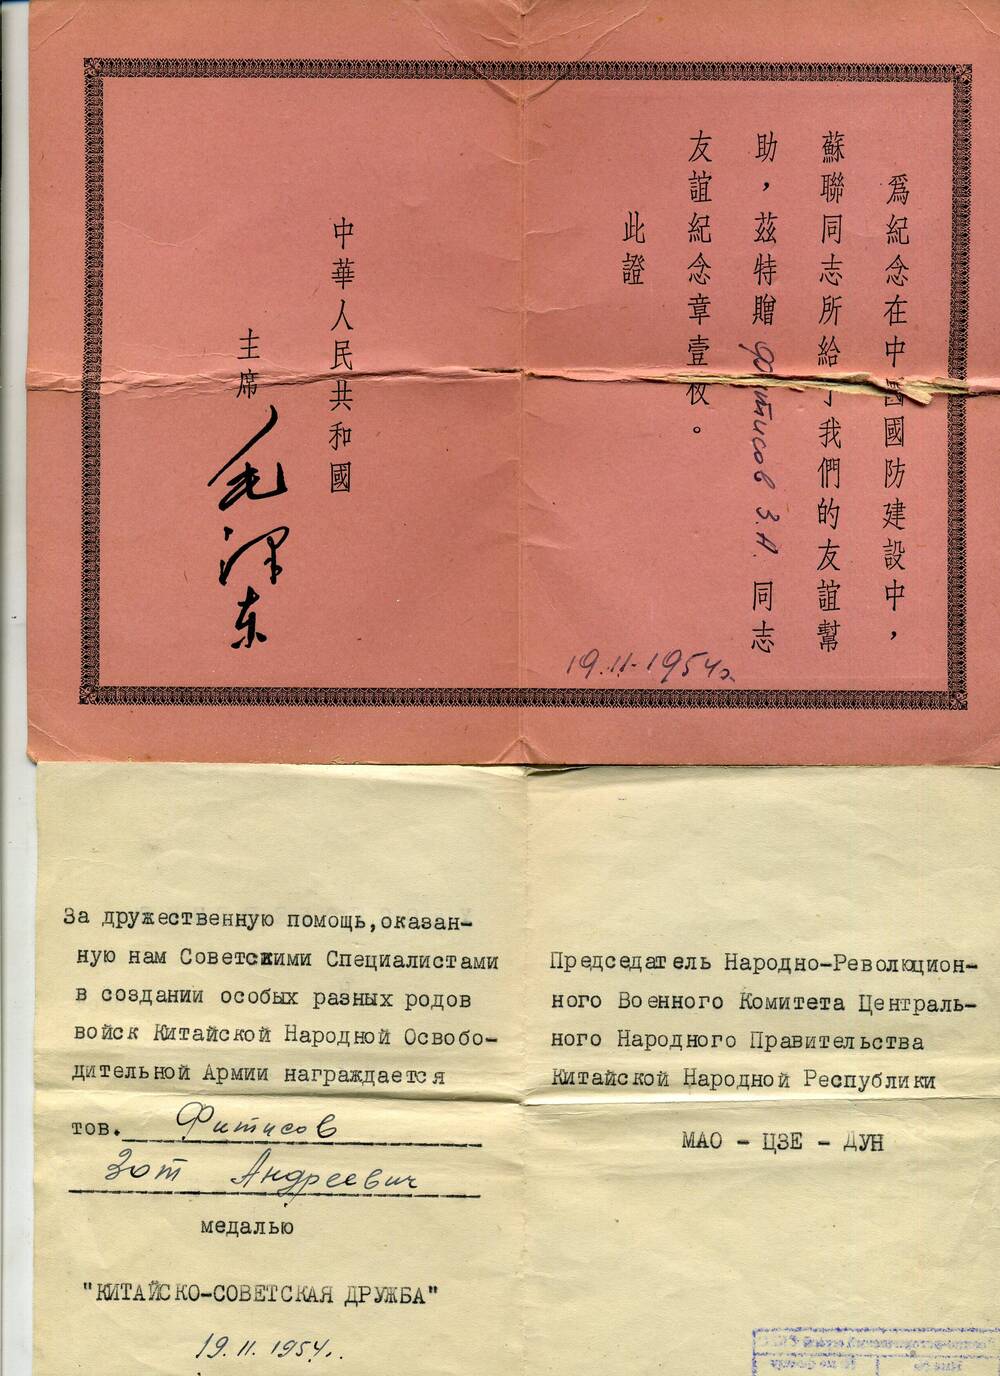 Удостоверение к медали Китайско-советская дружба от 19.11.1954 г.  Фитисова З.А.